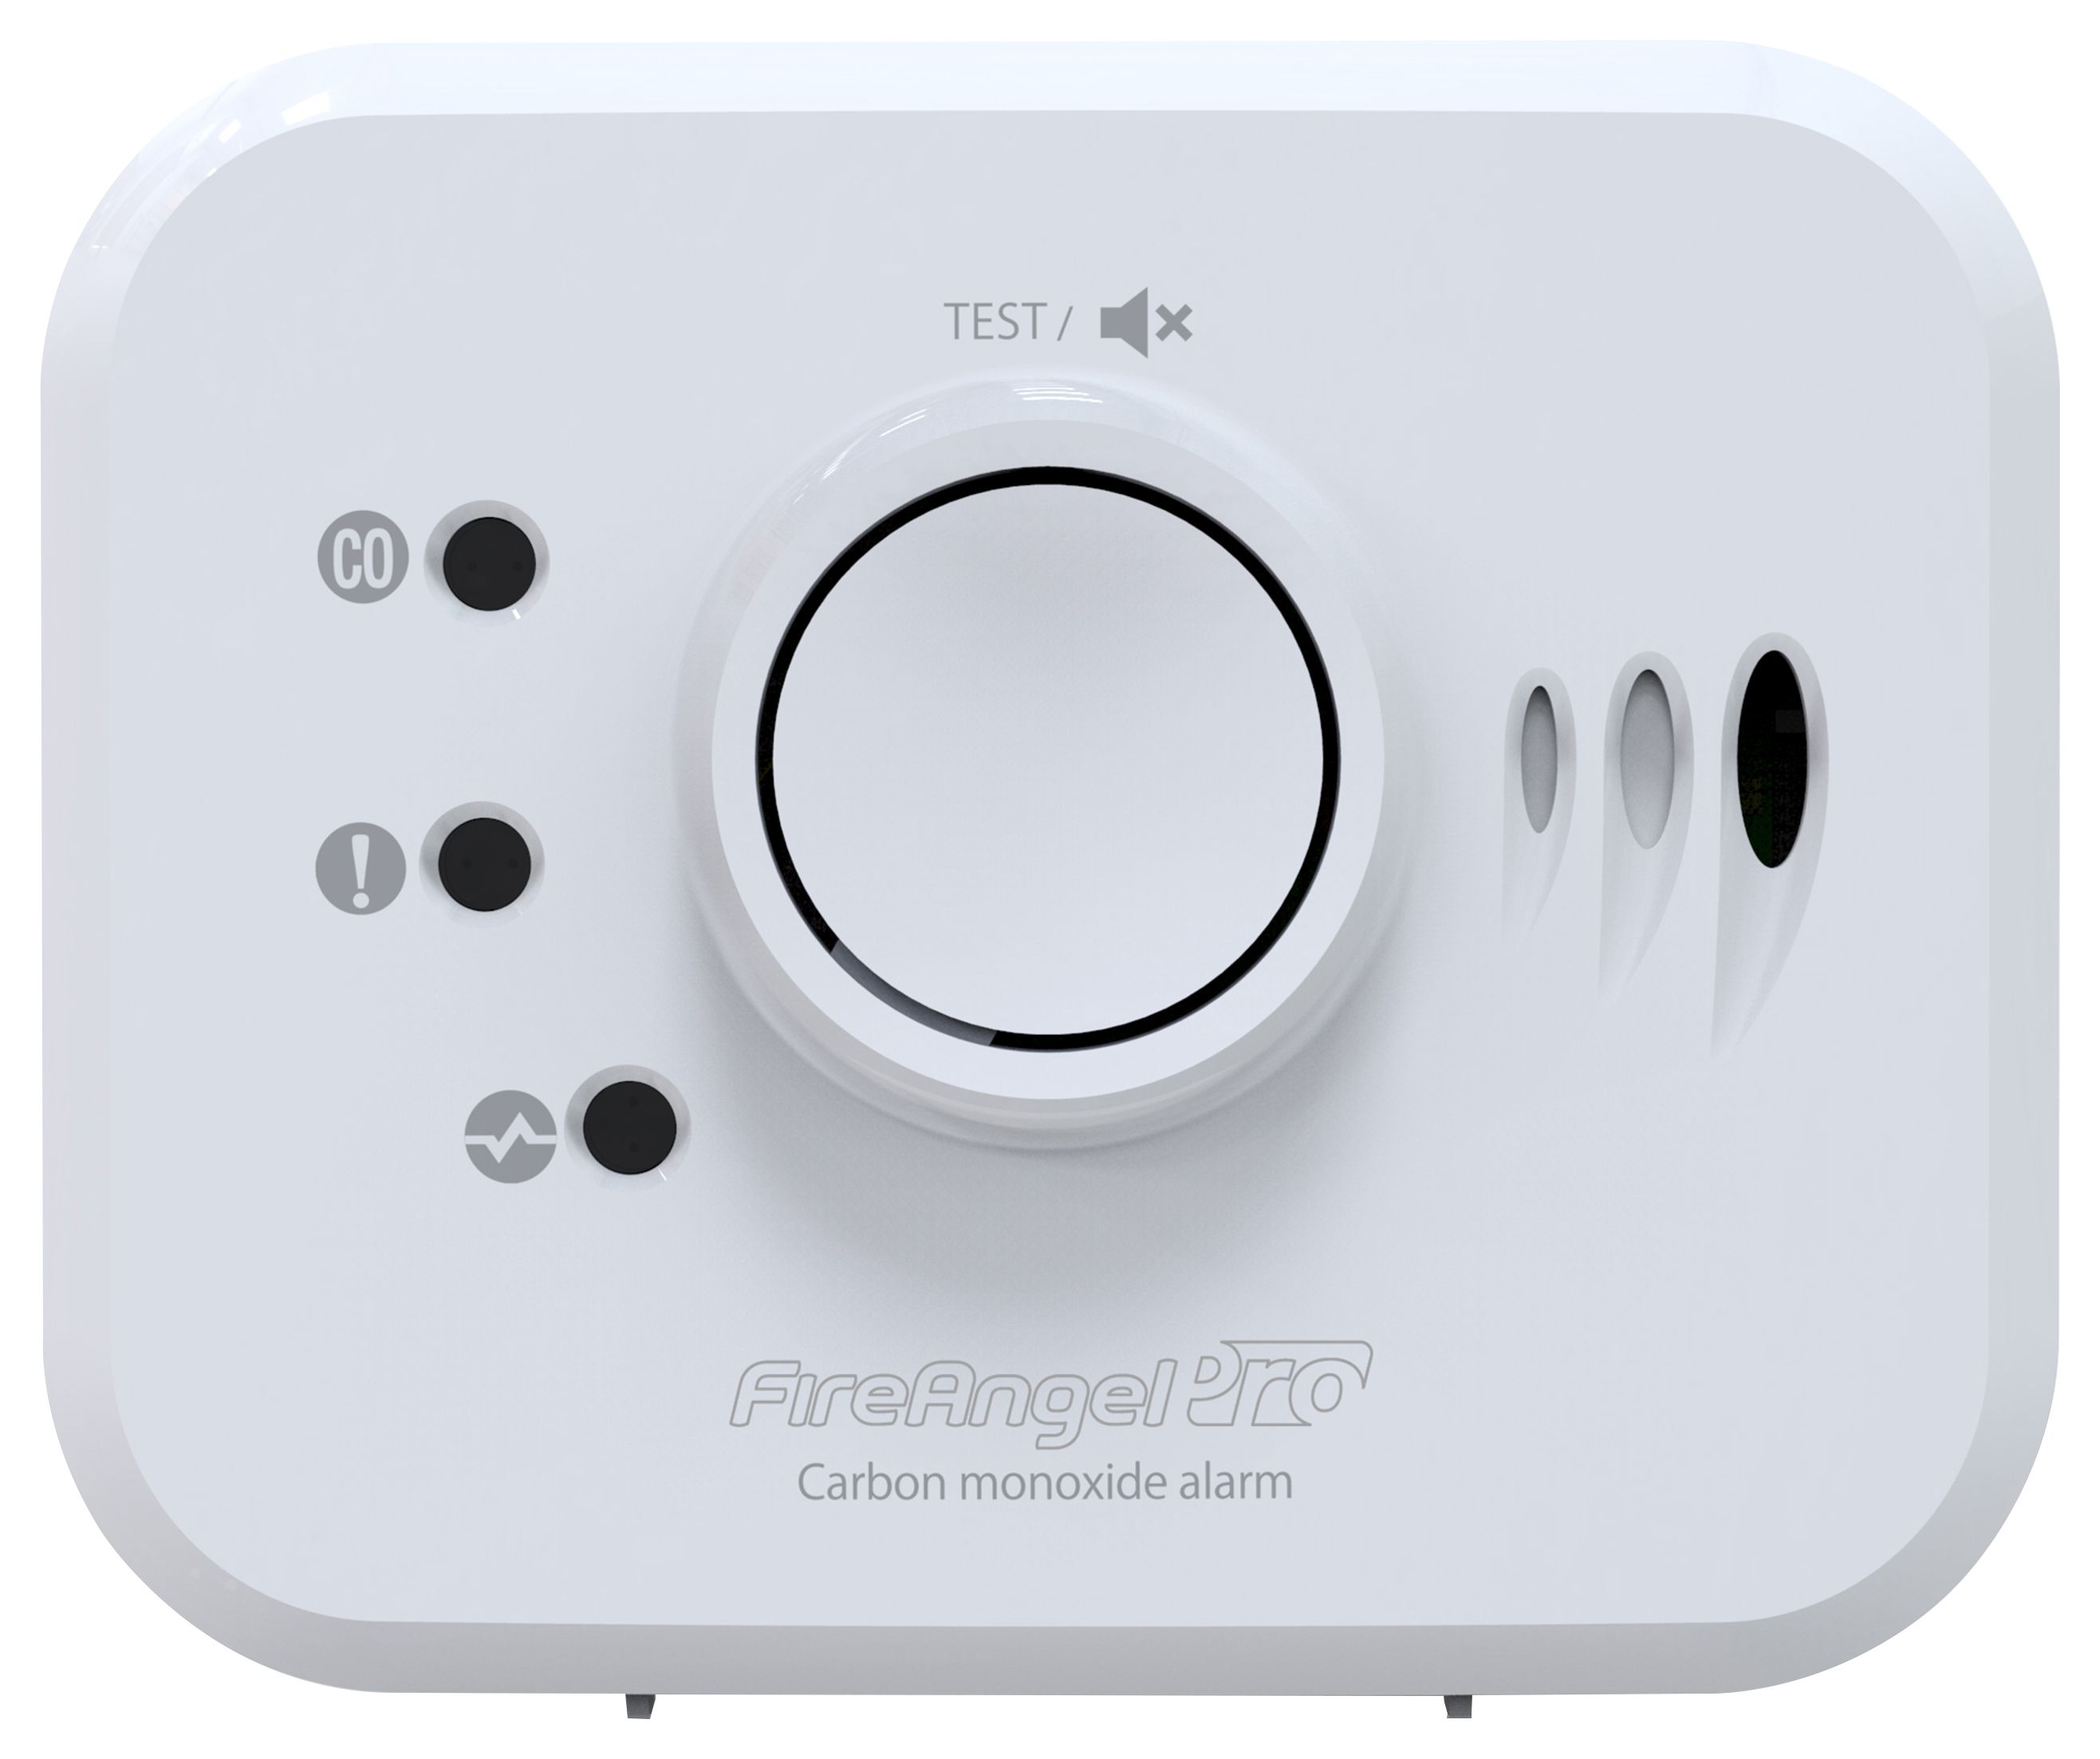 FireAngel FP1820W2-R Pro (CO) Connected Carbon Monoxide Alarm